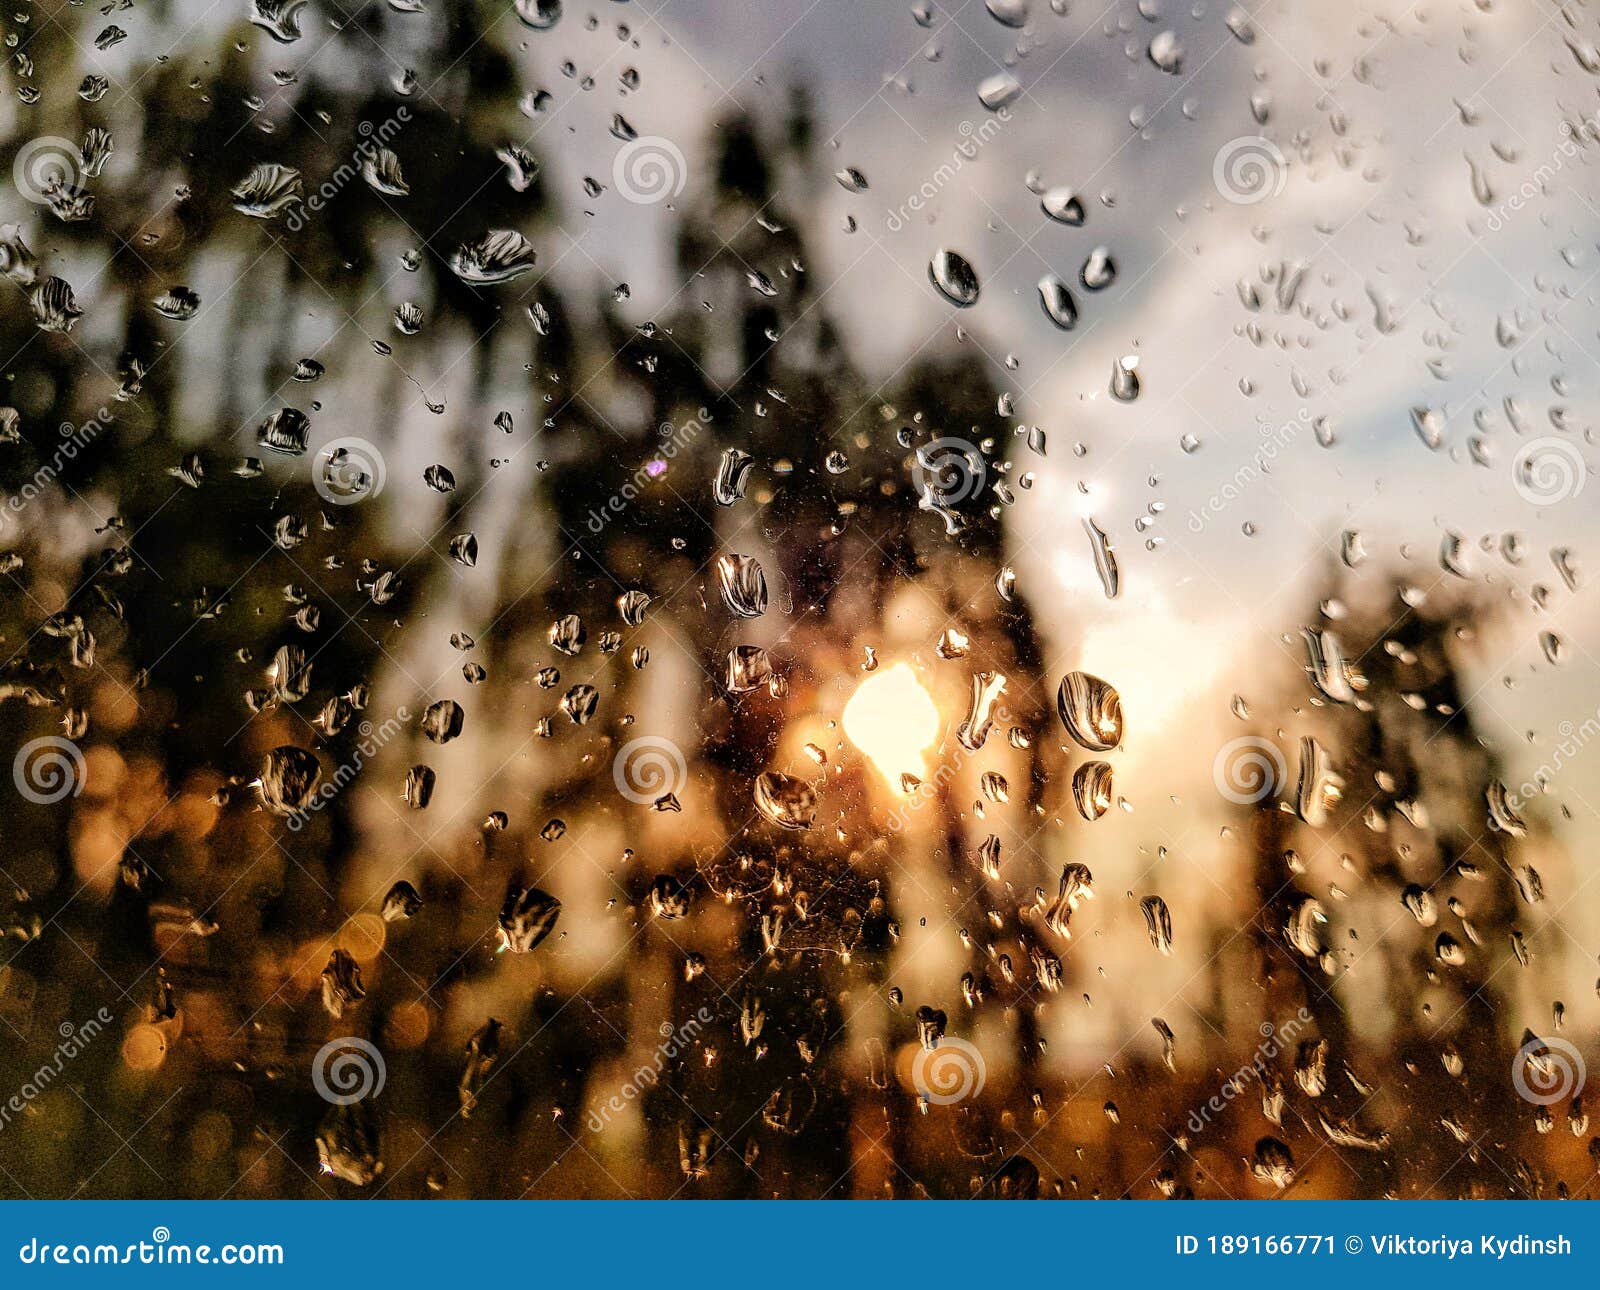 Hãy tận hưởng những cơn mưa hạnh phúc vào mùa hè này với bức ảnh đẹp như mơ! Ảnh sẽ khiến bạn nhớ đến những giây phút ngọt ngào của mùa hè khi trời mưa.